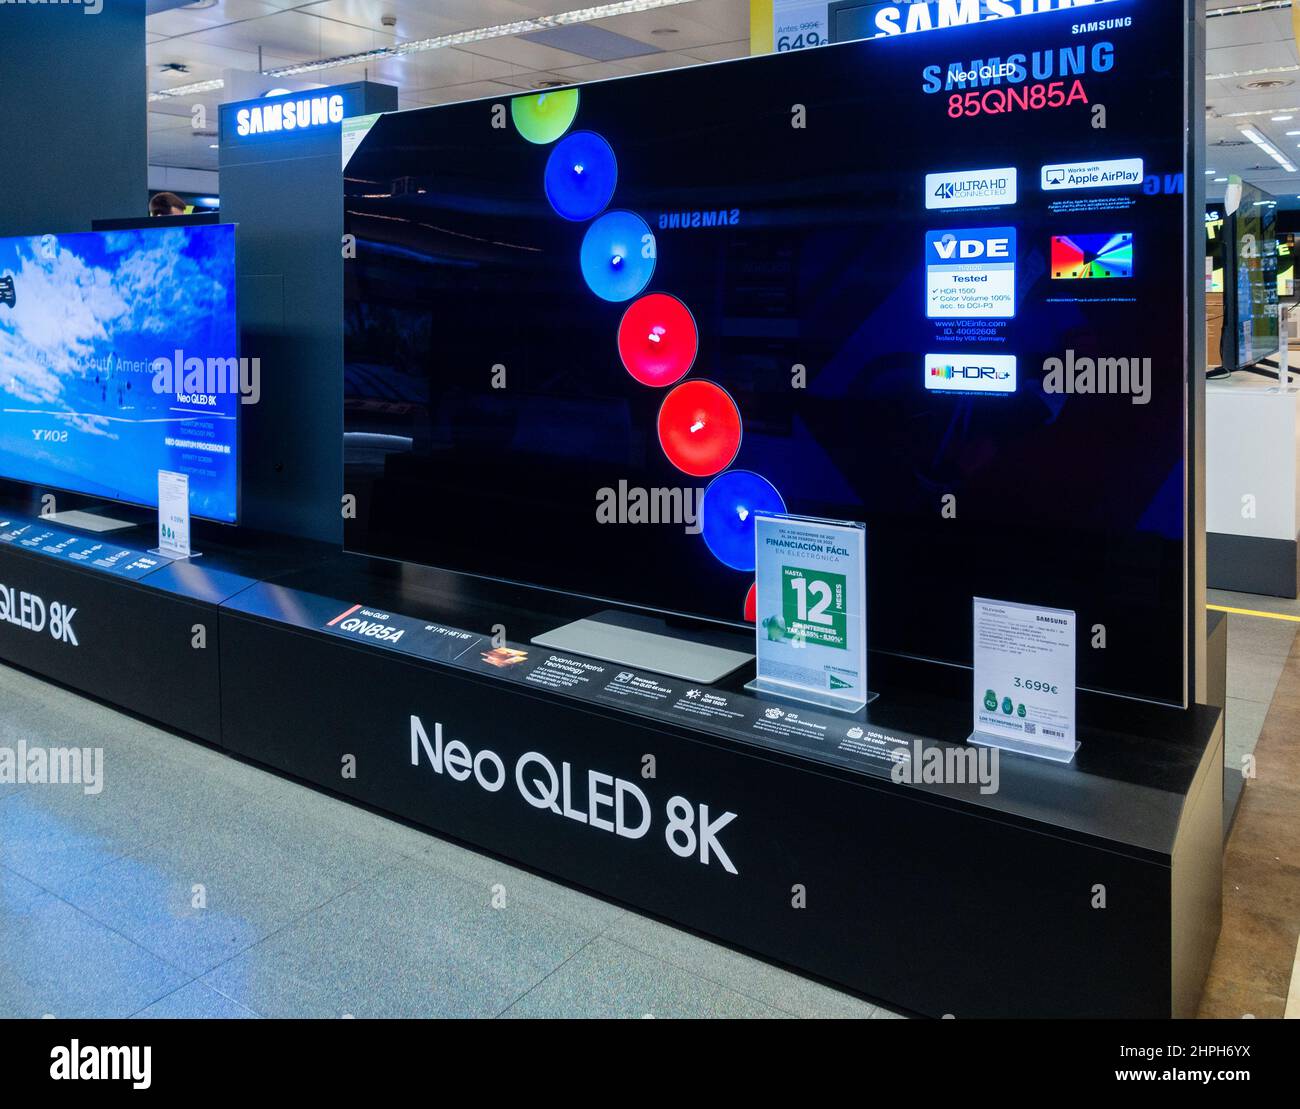 Televisore Samsung ad alta definizione Neo QLED 8K, schermo TV in negozio. Foto Stock